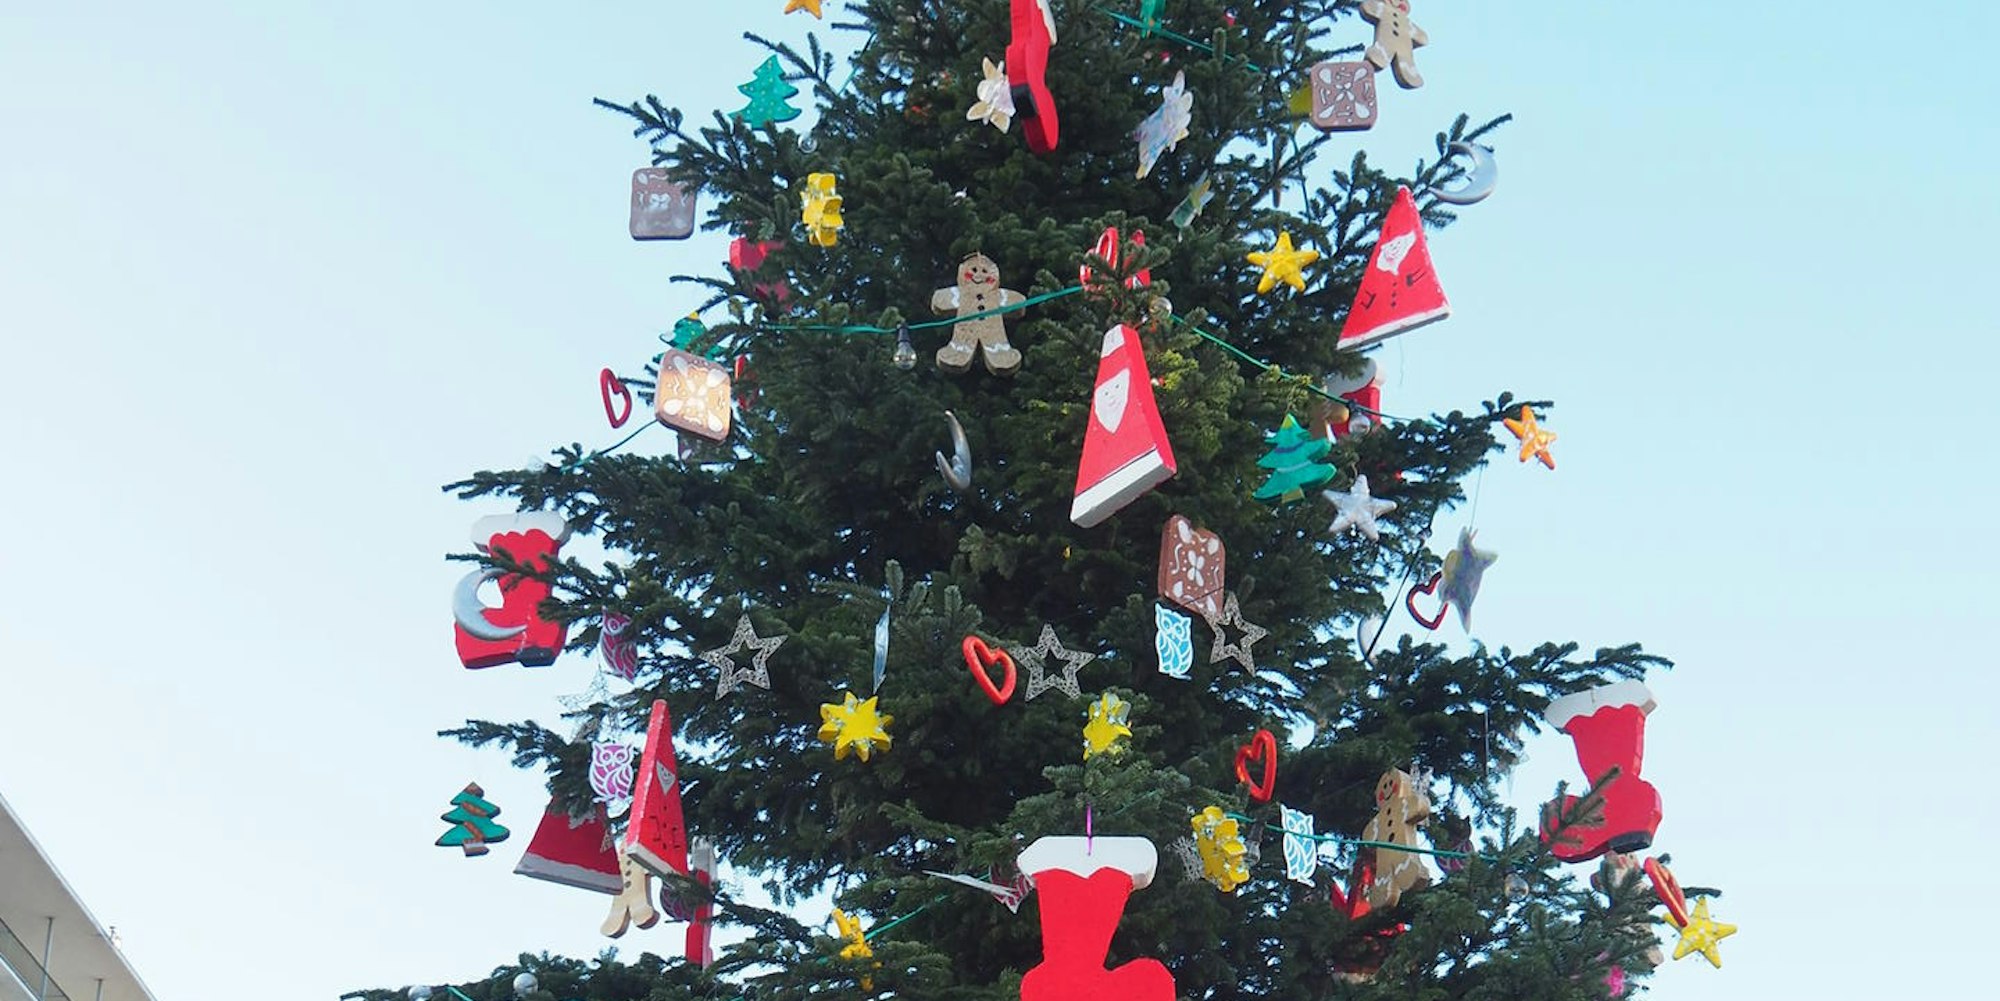 sues Weihnachtsmärkte Tannenbaum von Rodenkirchen Foto Archiv Süsser